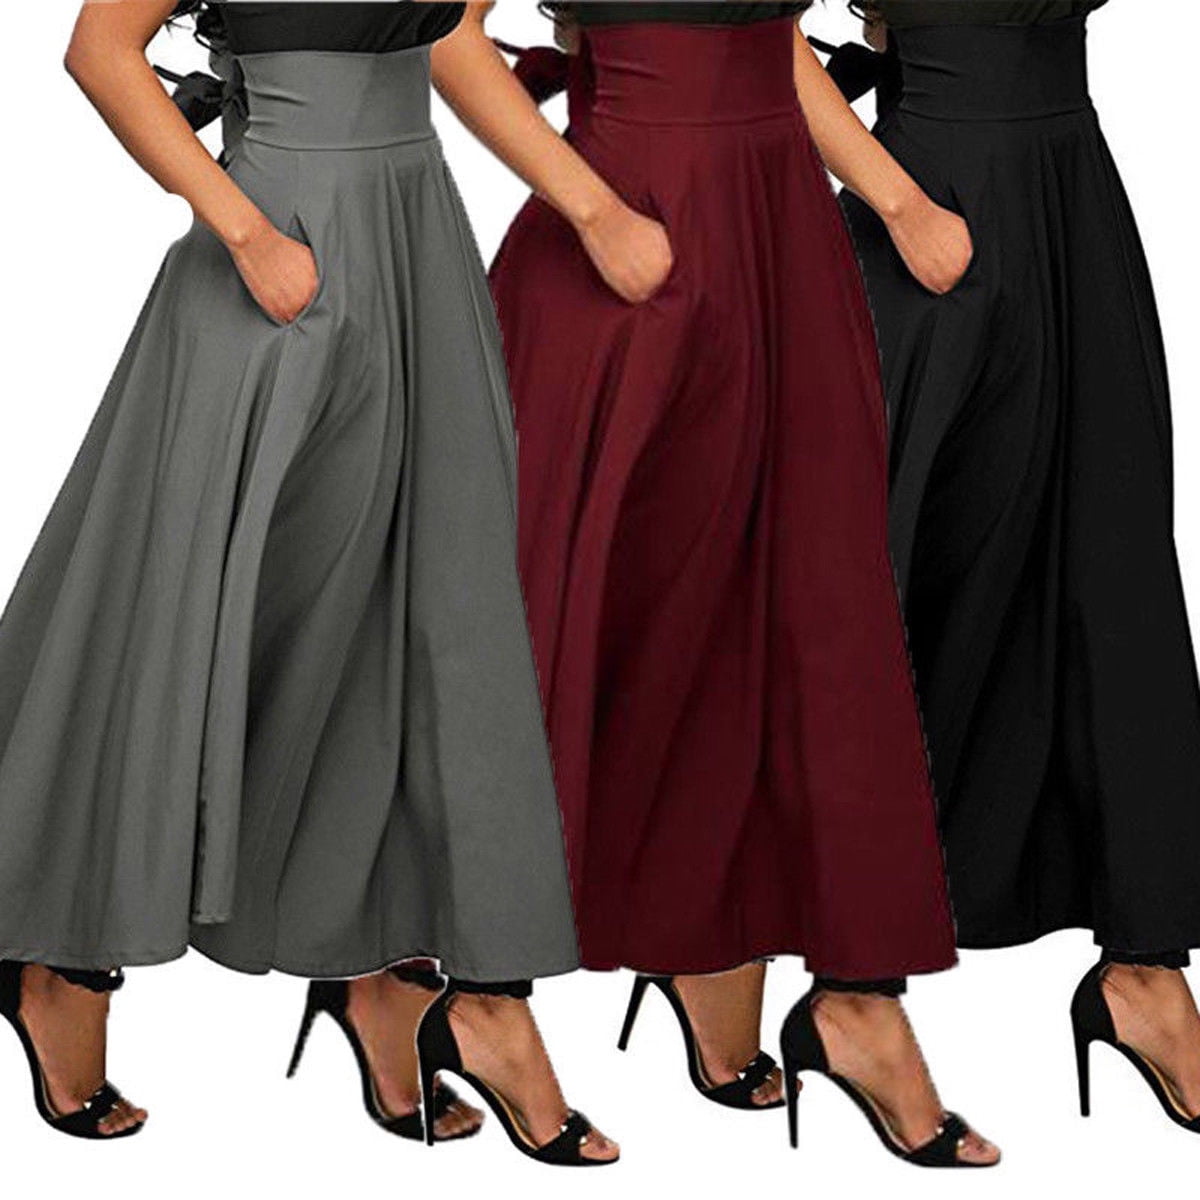 Bagilaanoe High Waist Pleated Long Skirts Women Flared Full Maxi Skirt  Swing Dress